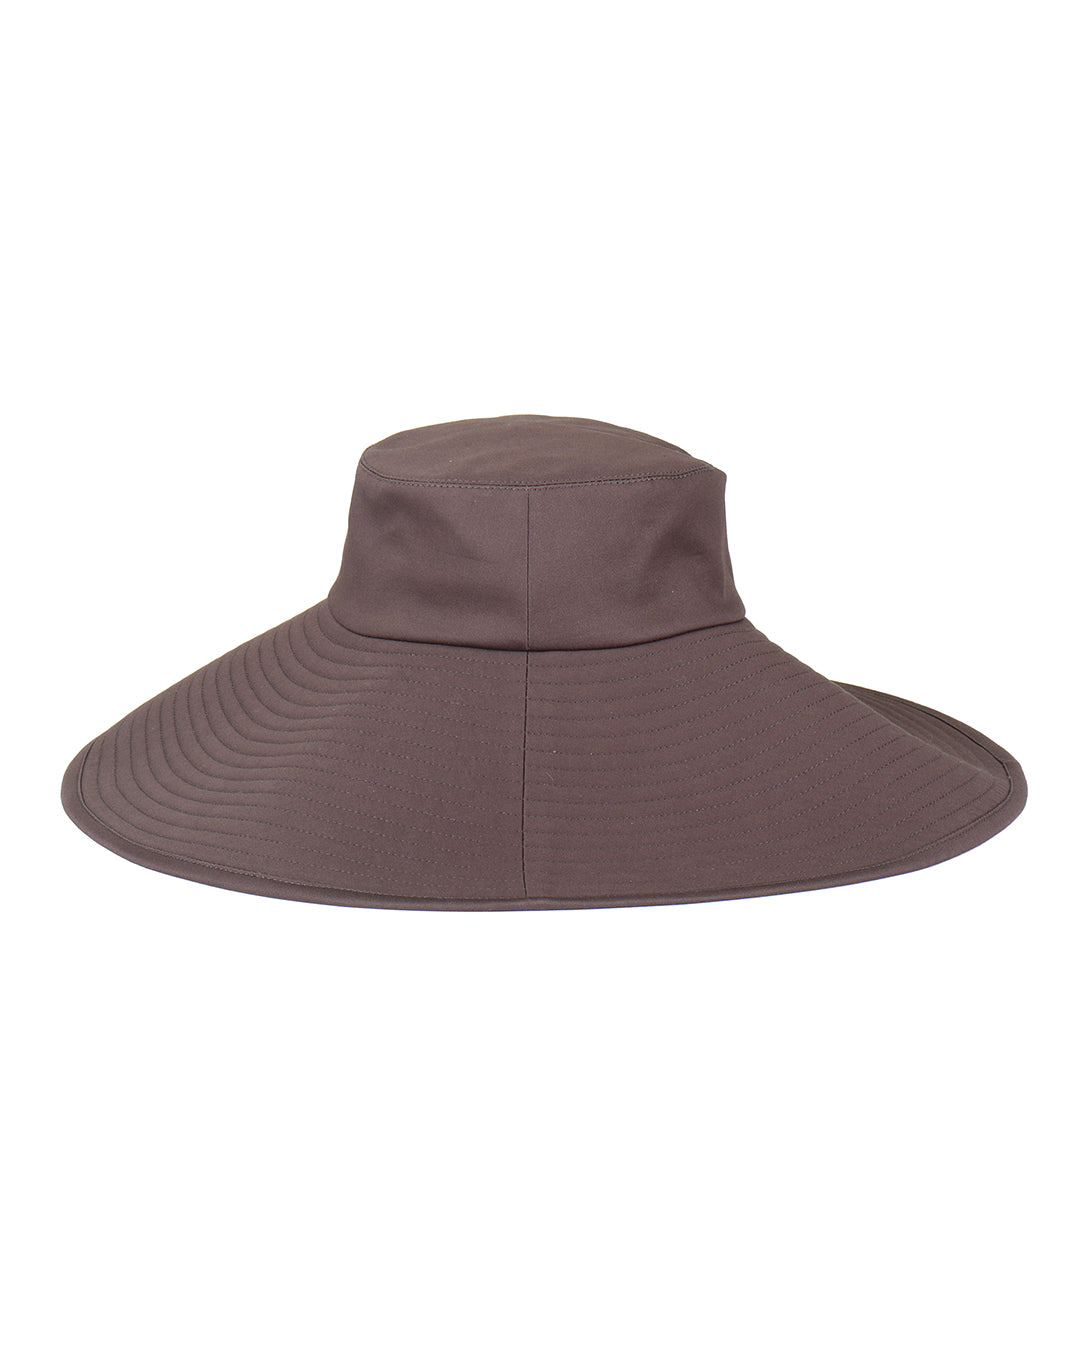 t'1630 Wide Brim Hat graphite – LOVE nagoya